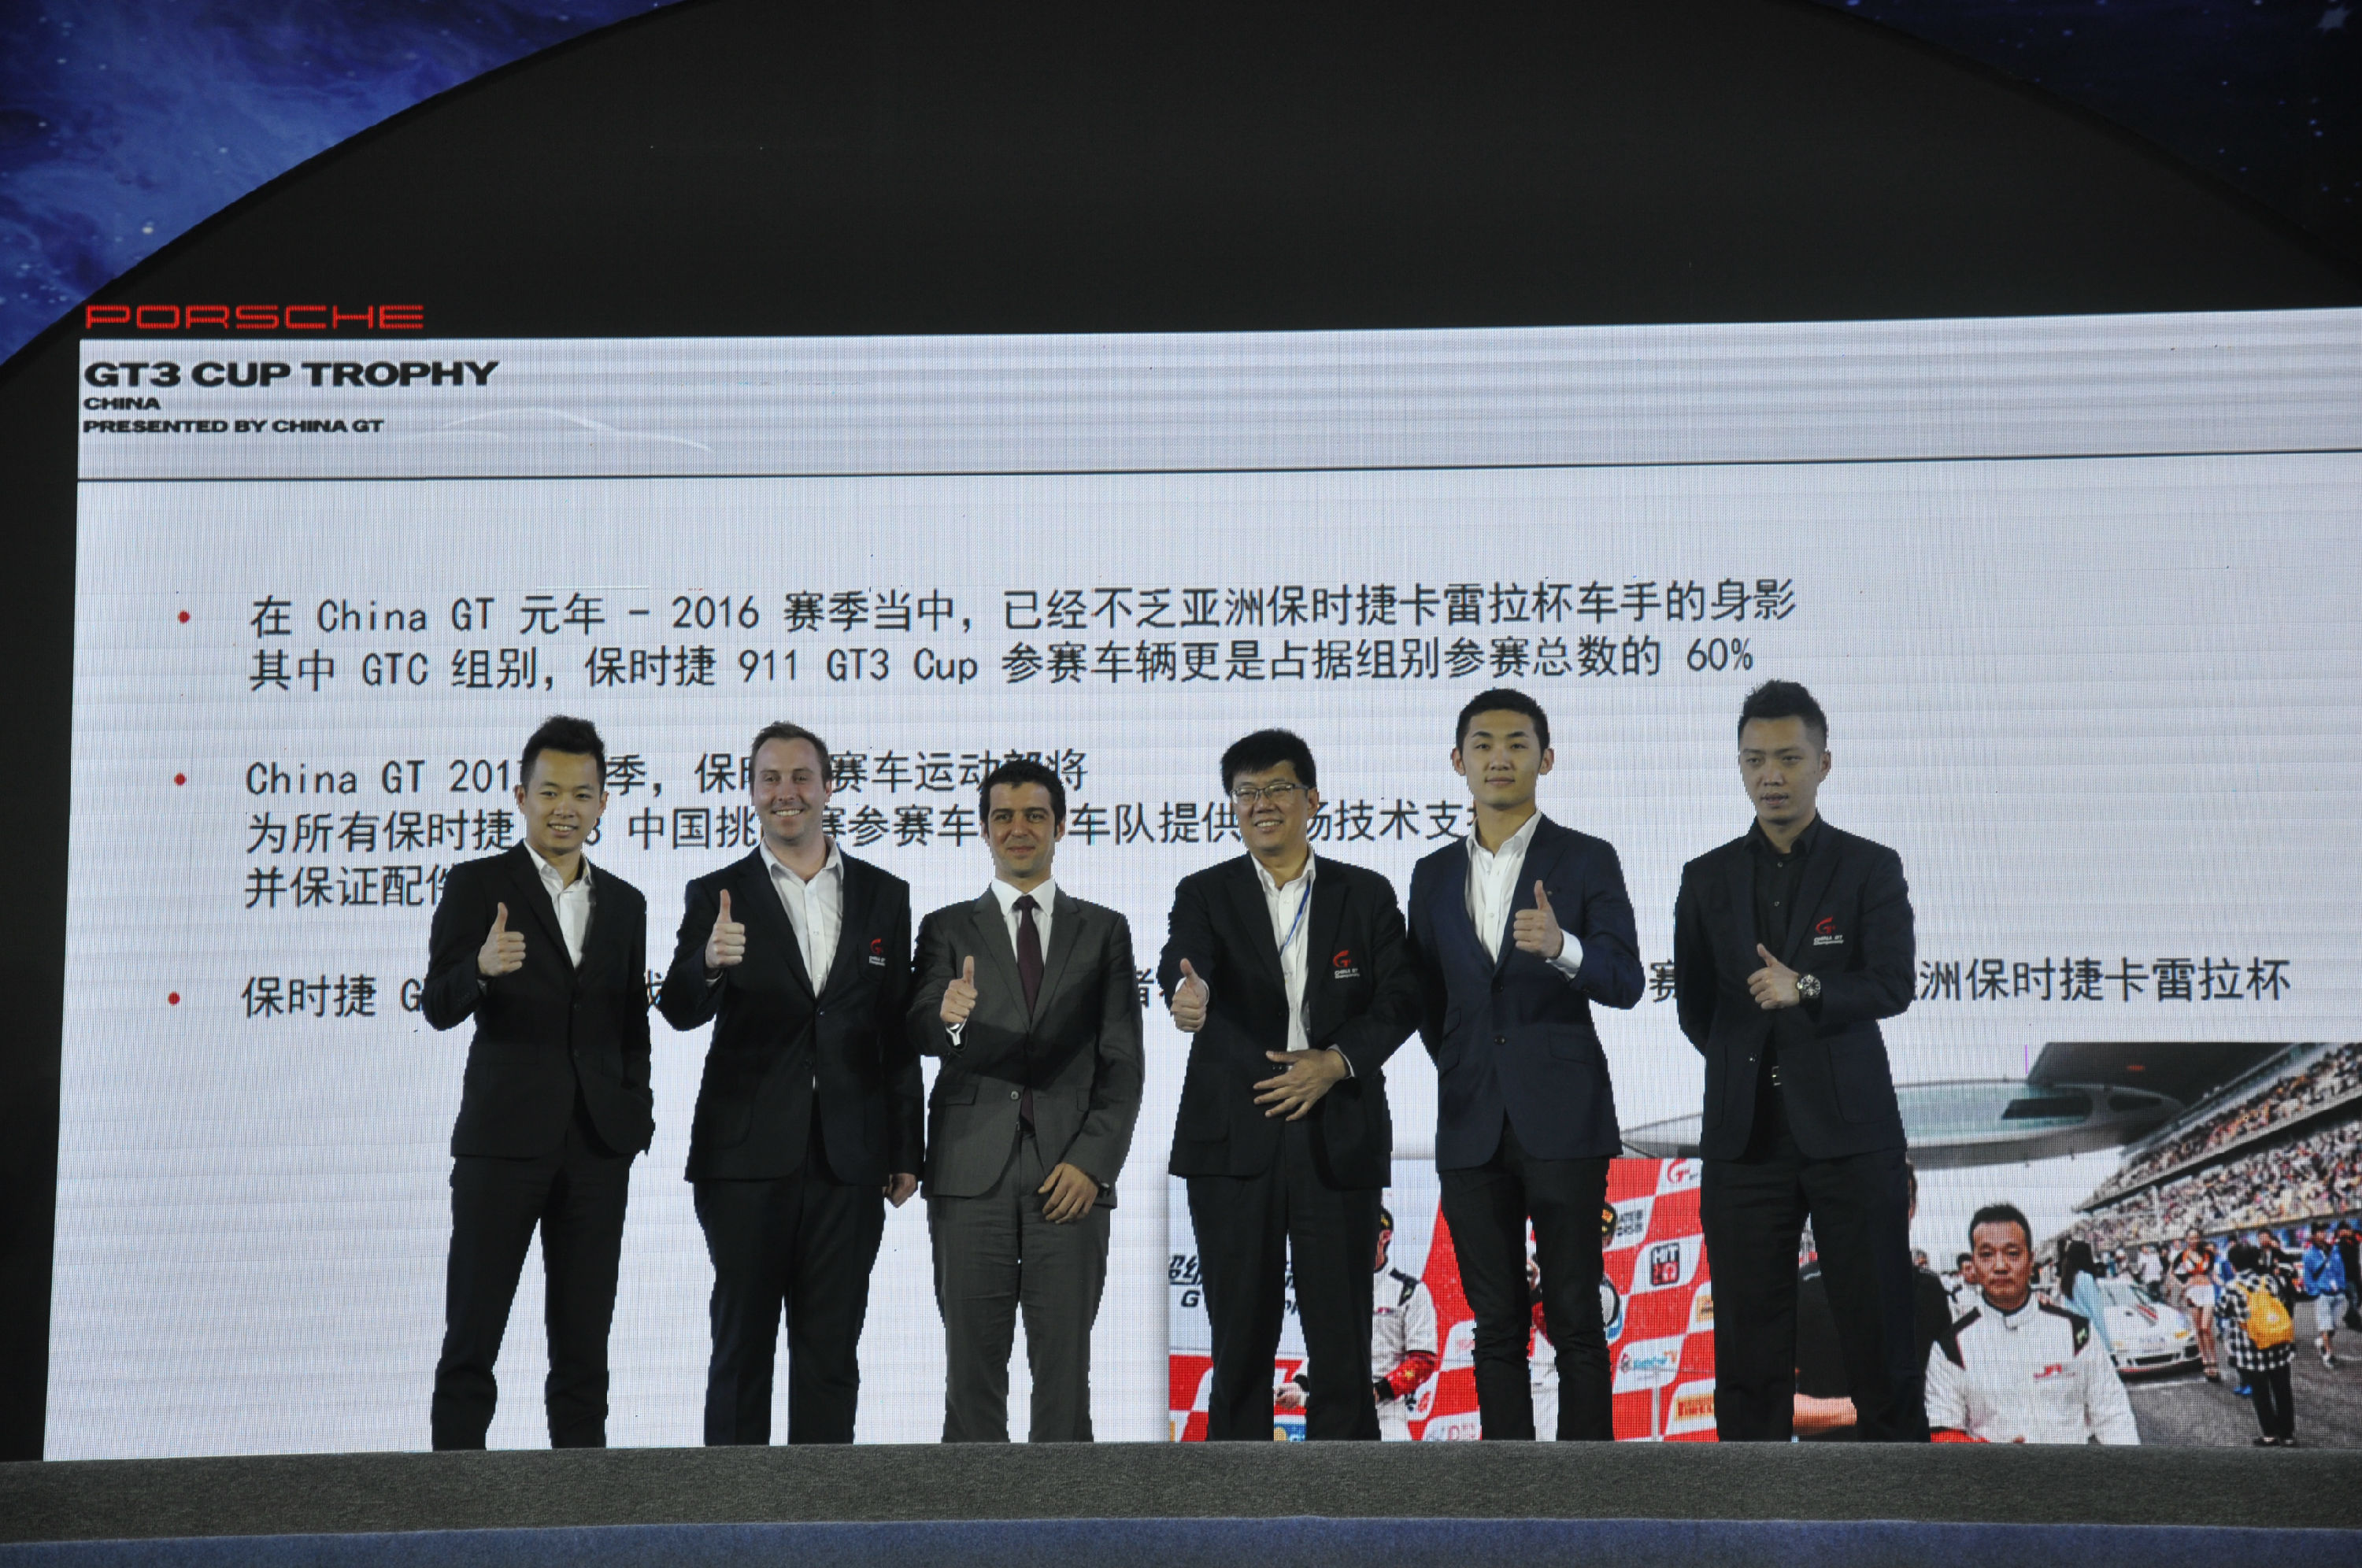 中国超级跑车锦标赛China GT与保时捷 联合发布 创立保时捷GT3中国挑战赛